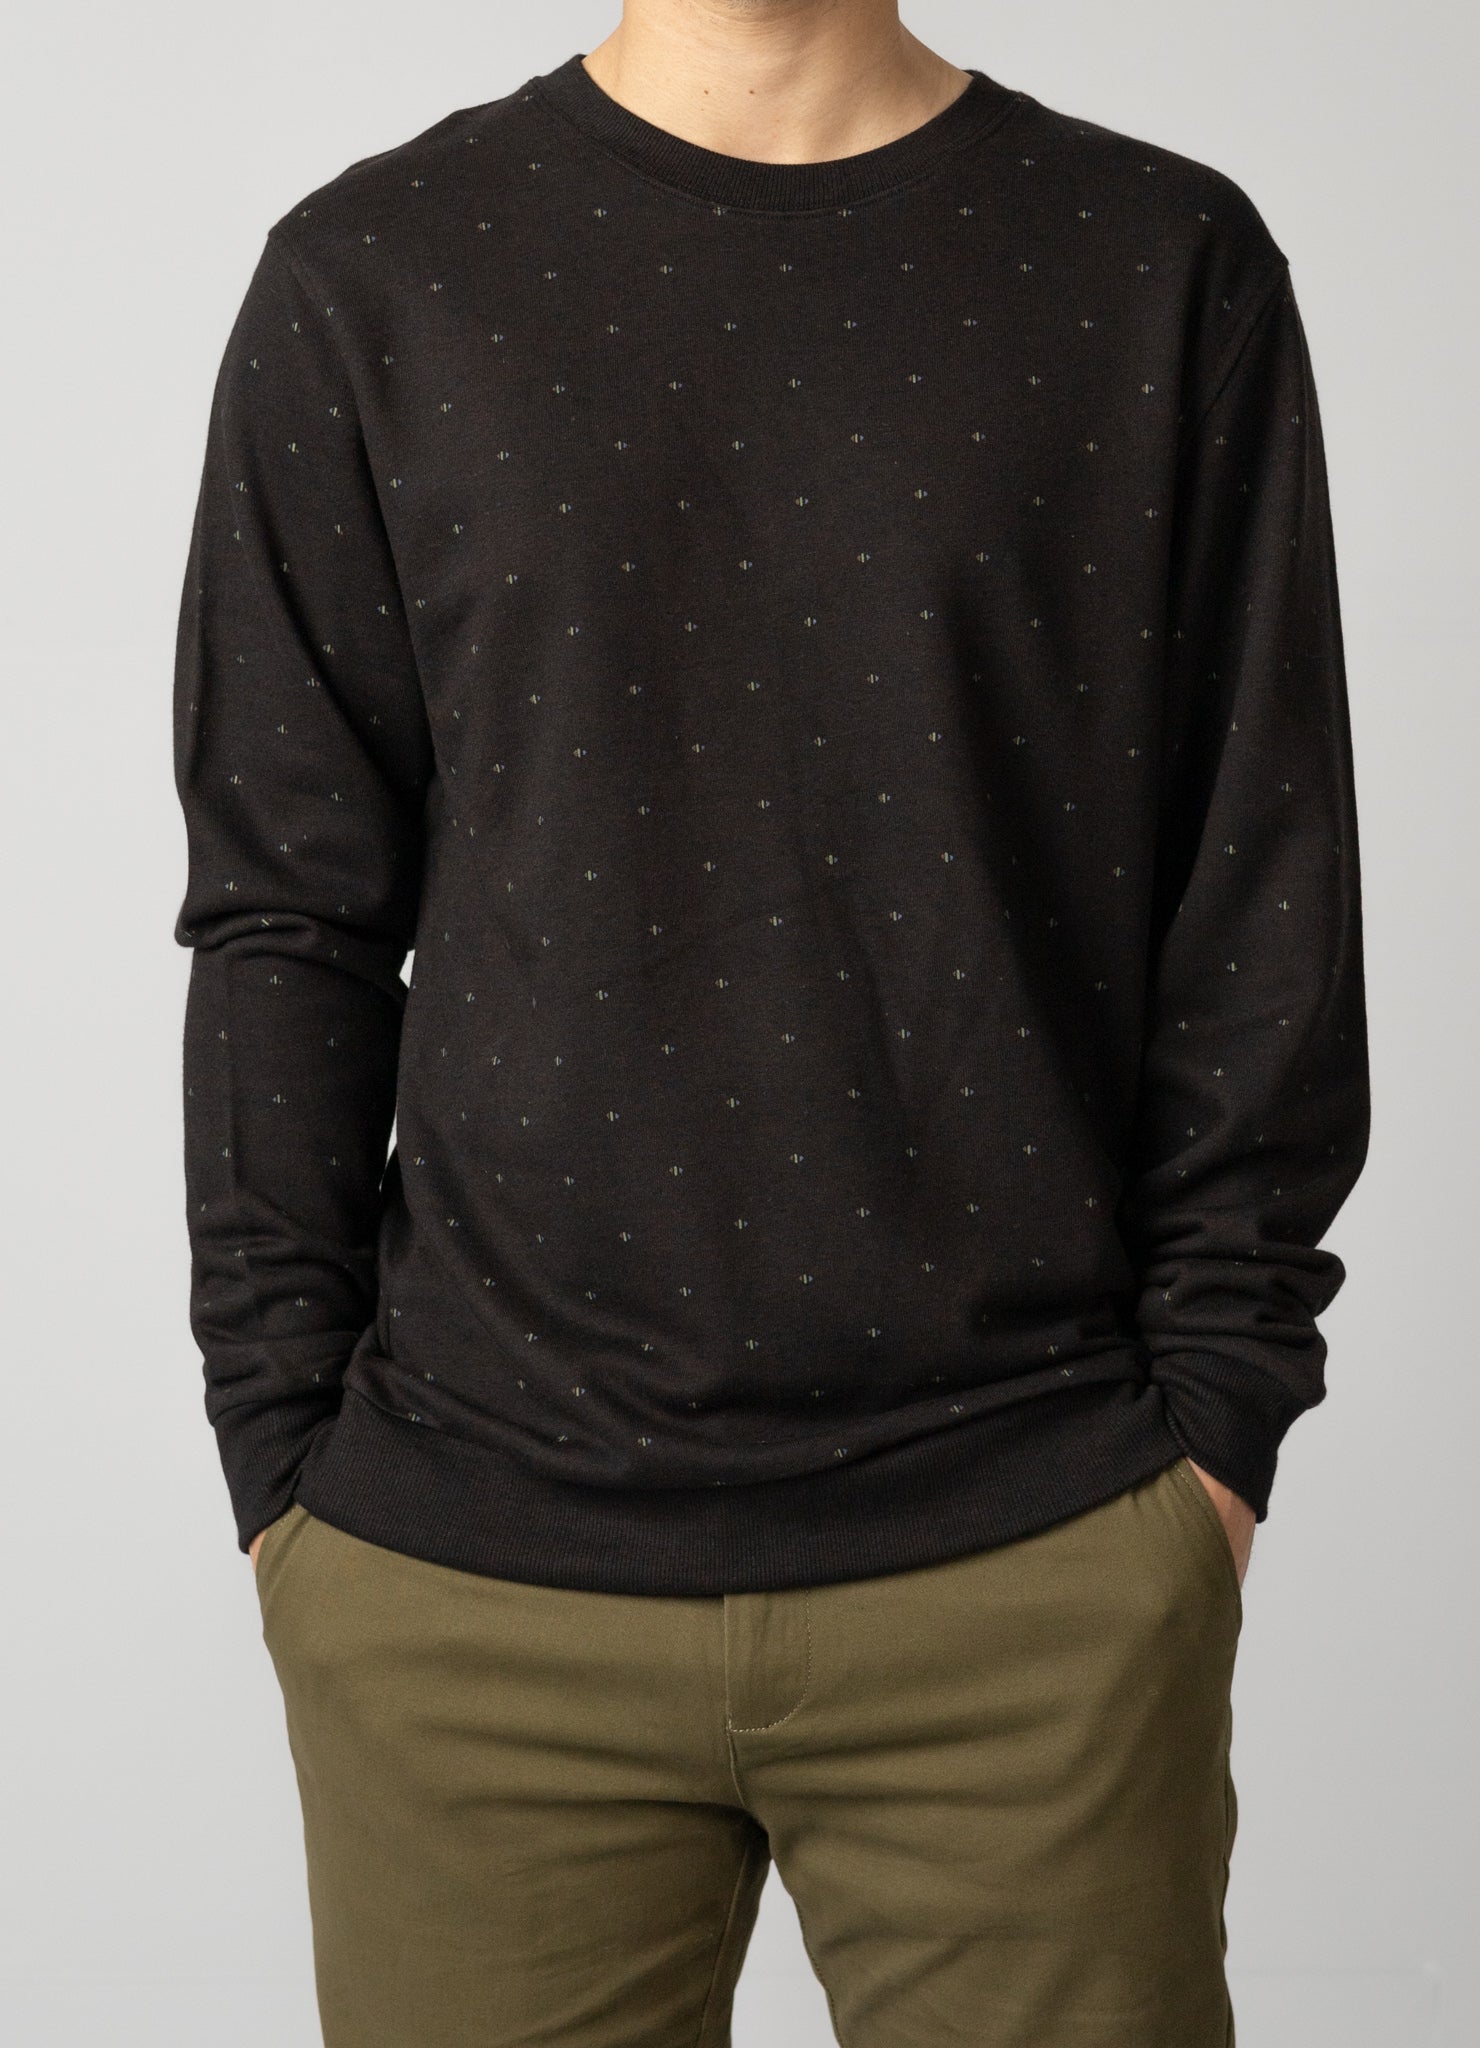 Cozy long-sleeved screen-printed sweatshirt